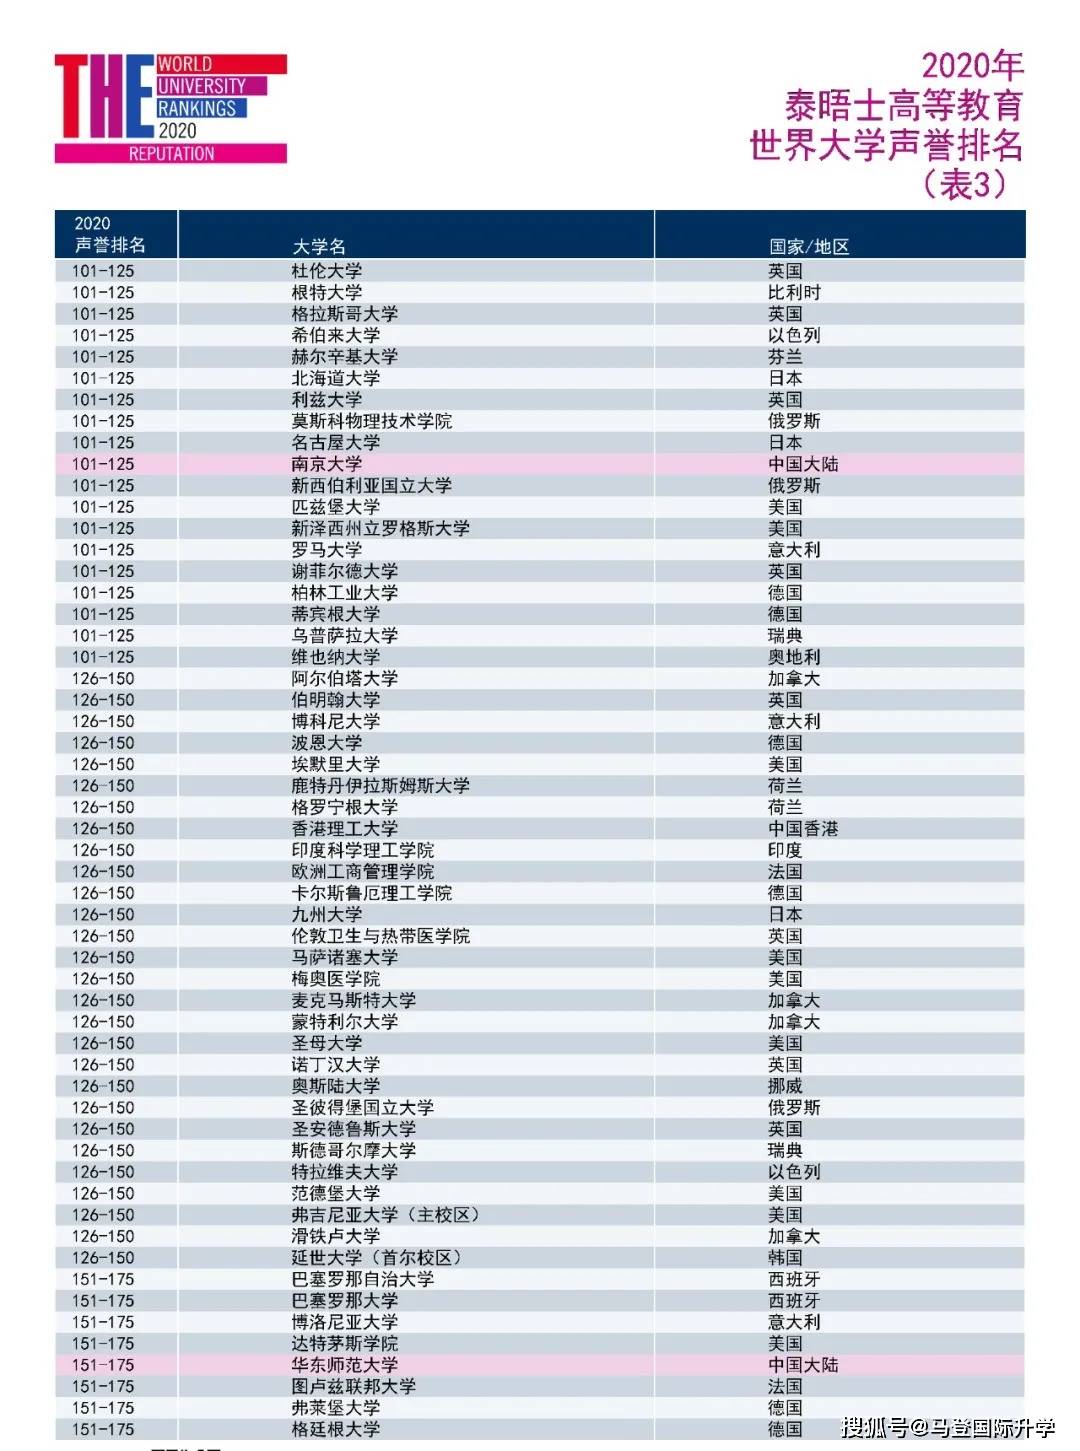 2020中国大学排名前_2020中国最好大学排名新鲜公布,武汉大学挺进前10强(2)